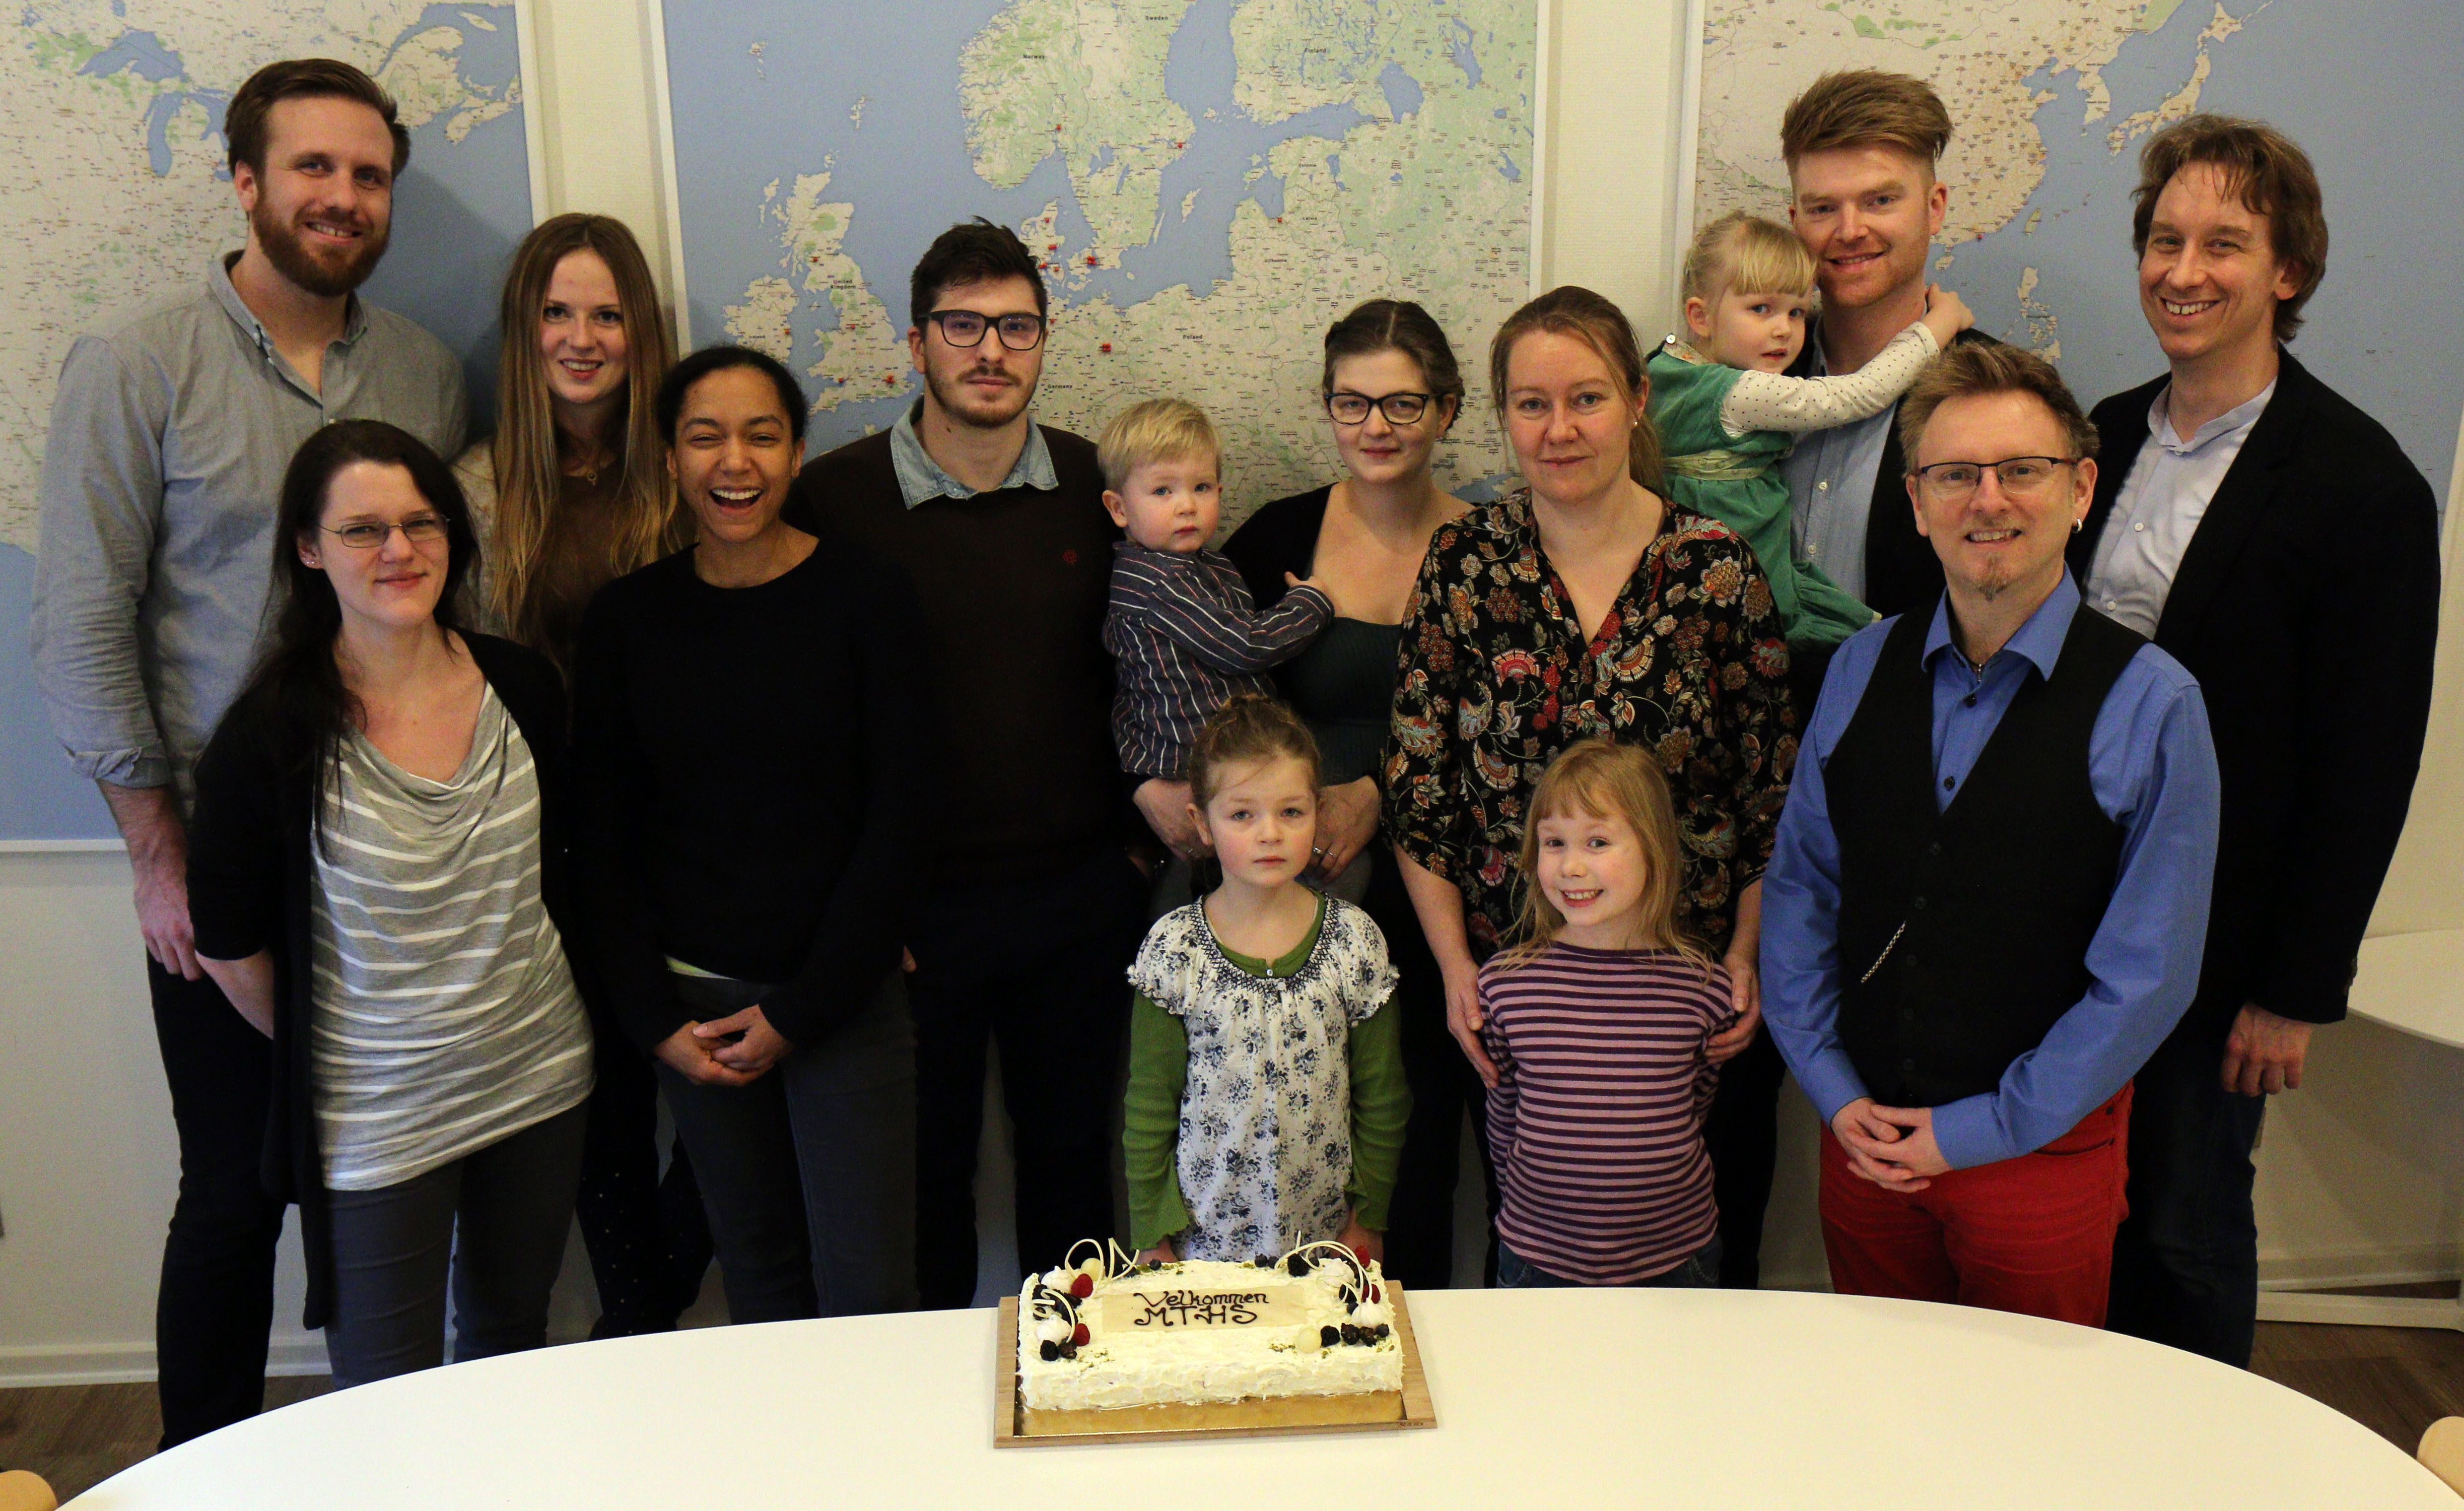 Welcome cake for Musikteaterhøjskolan